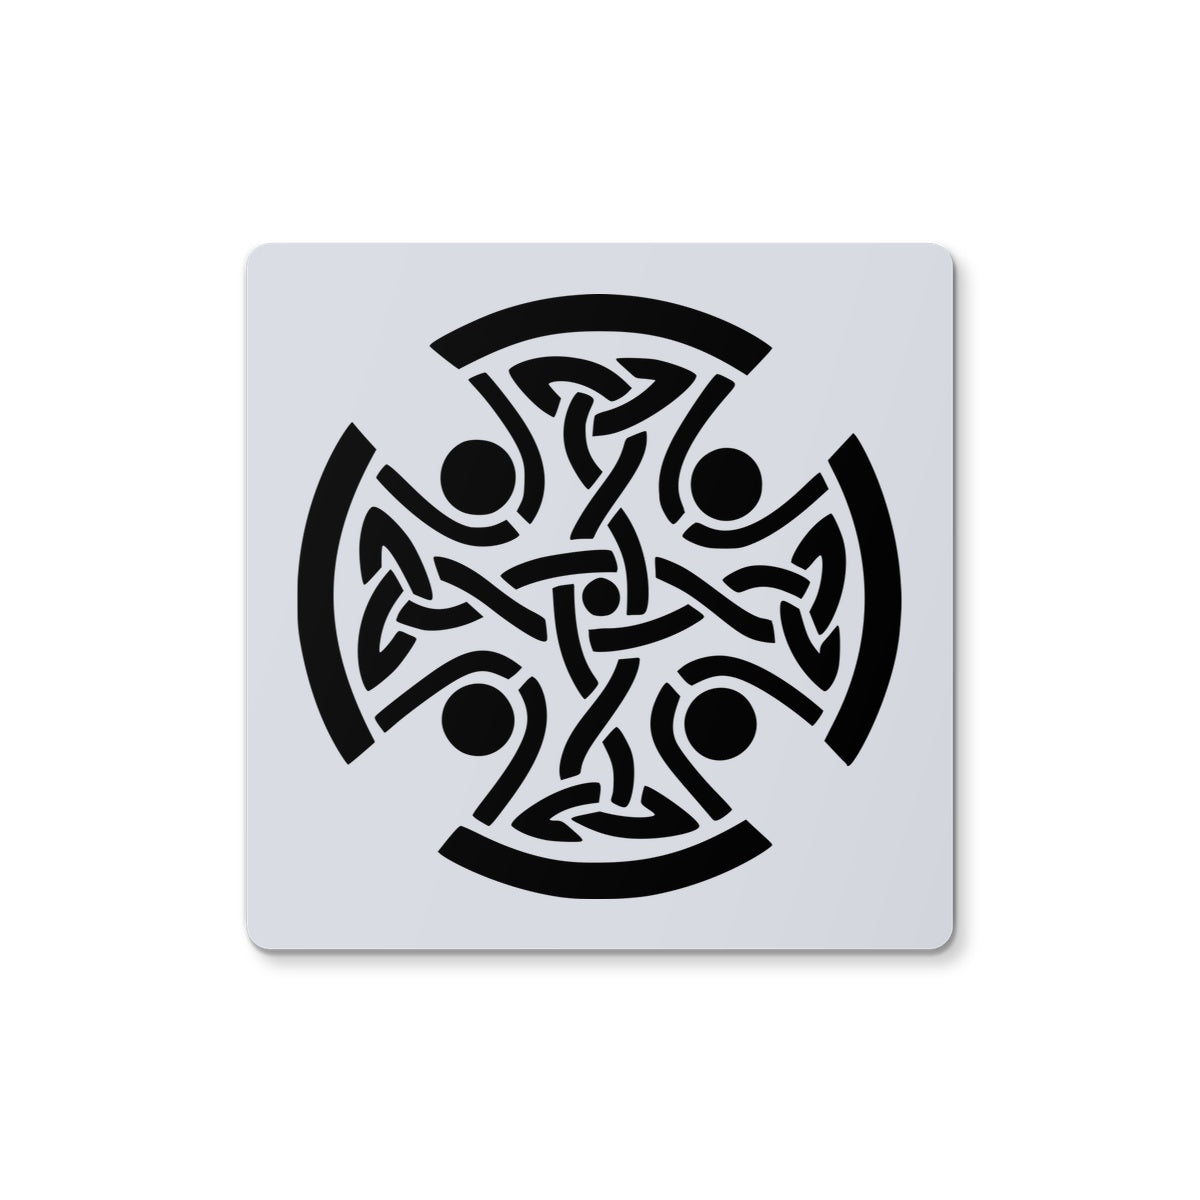 Celtic Woven Cross Coaster